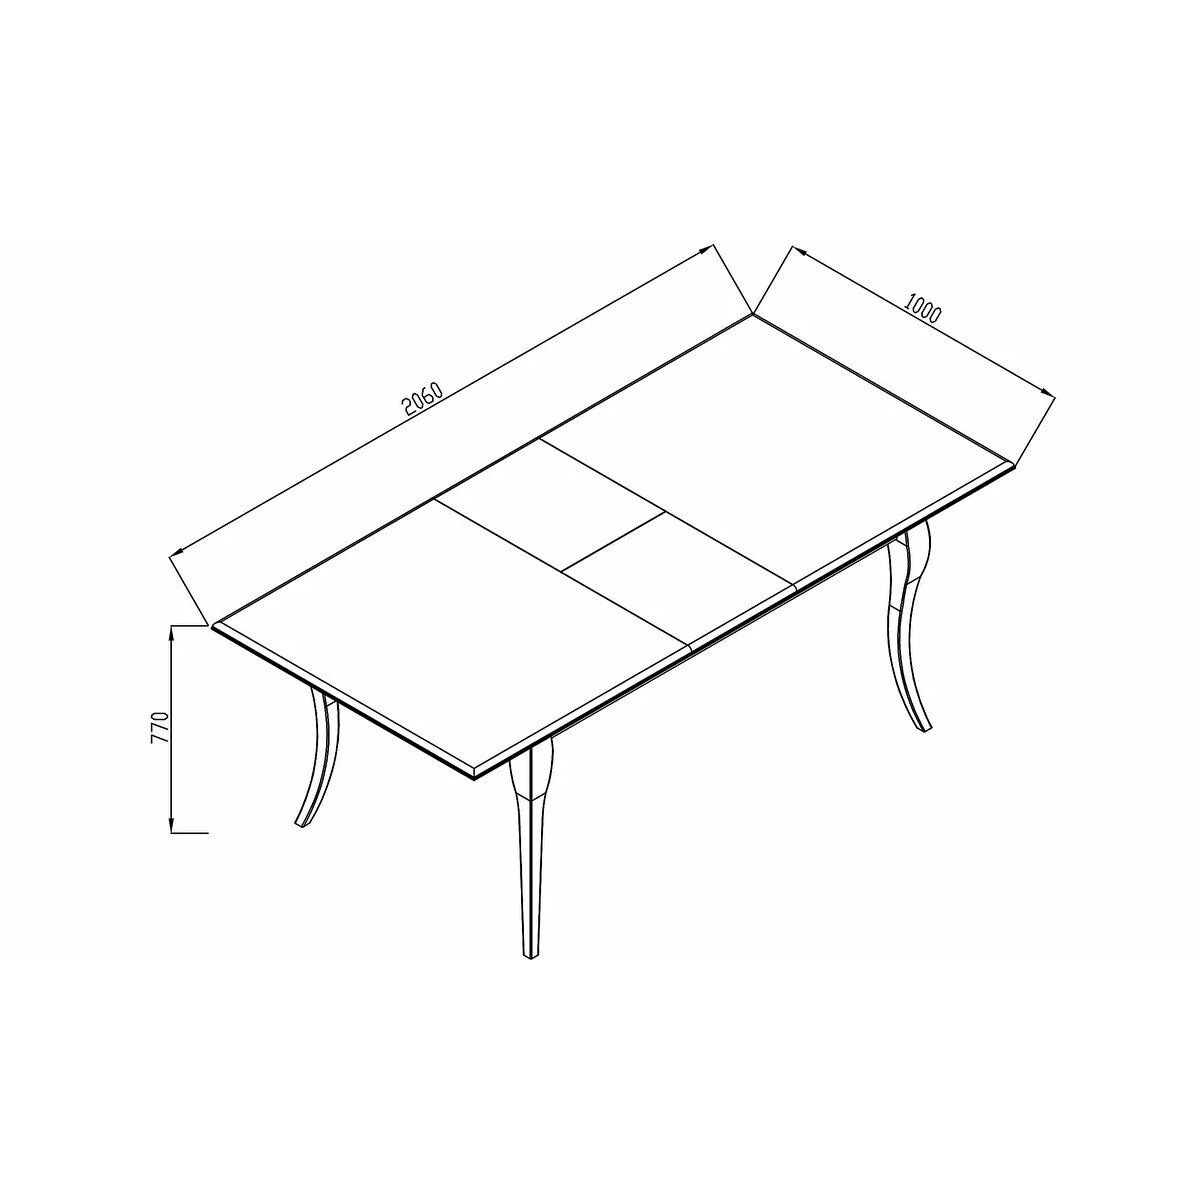 Стол обеденный Bellona Andera, прямоугольный раздвижной, размер 166 (206)х100х77 см (ANDR-14)ANDR-14